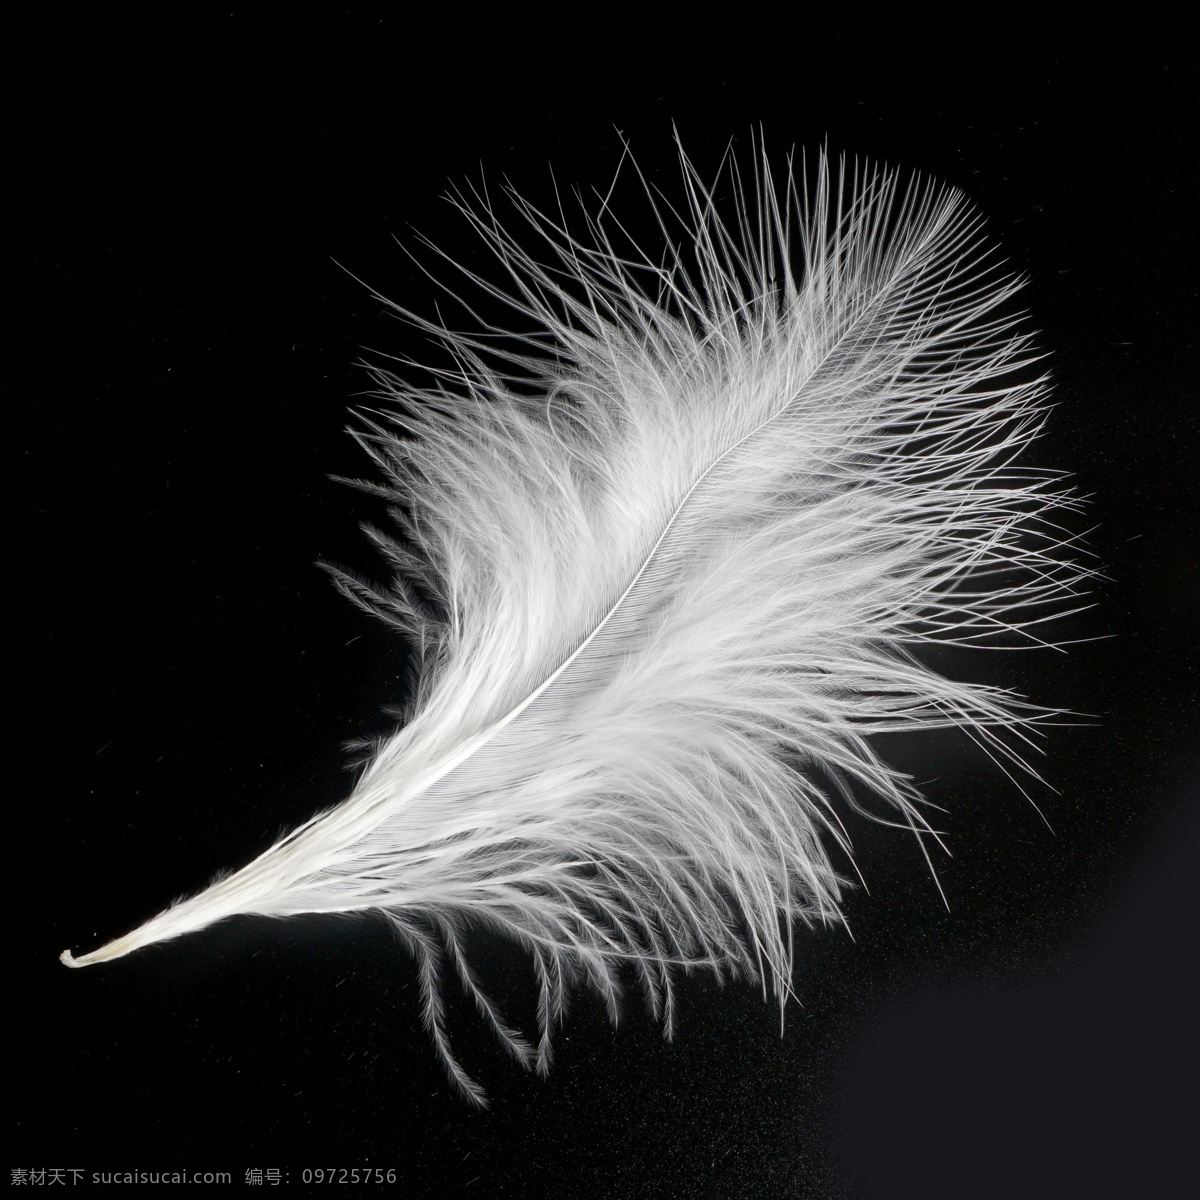 一根 白色 羽毛 一根羽毛 鸡毛 白色羽毛 毛发 毛 白毛 鹅毛 鸭毛 羽绒 开发素材